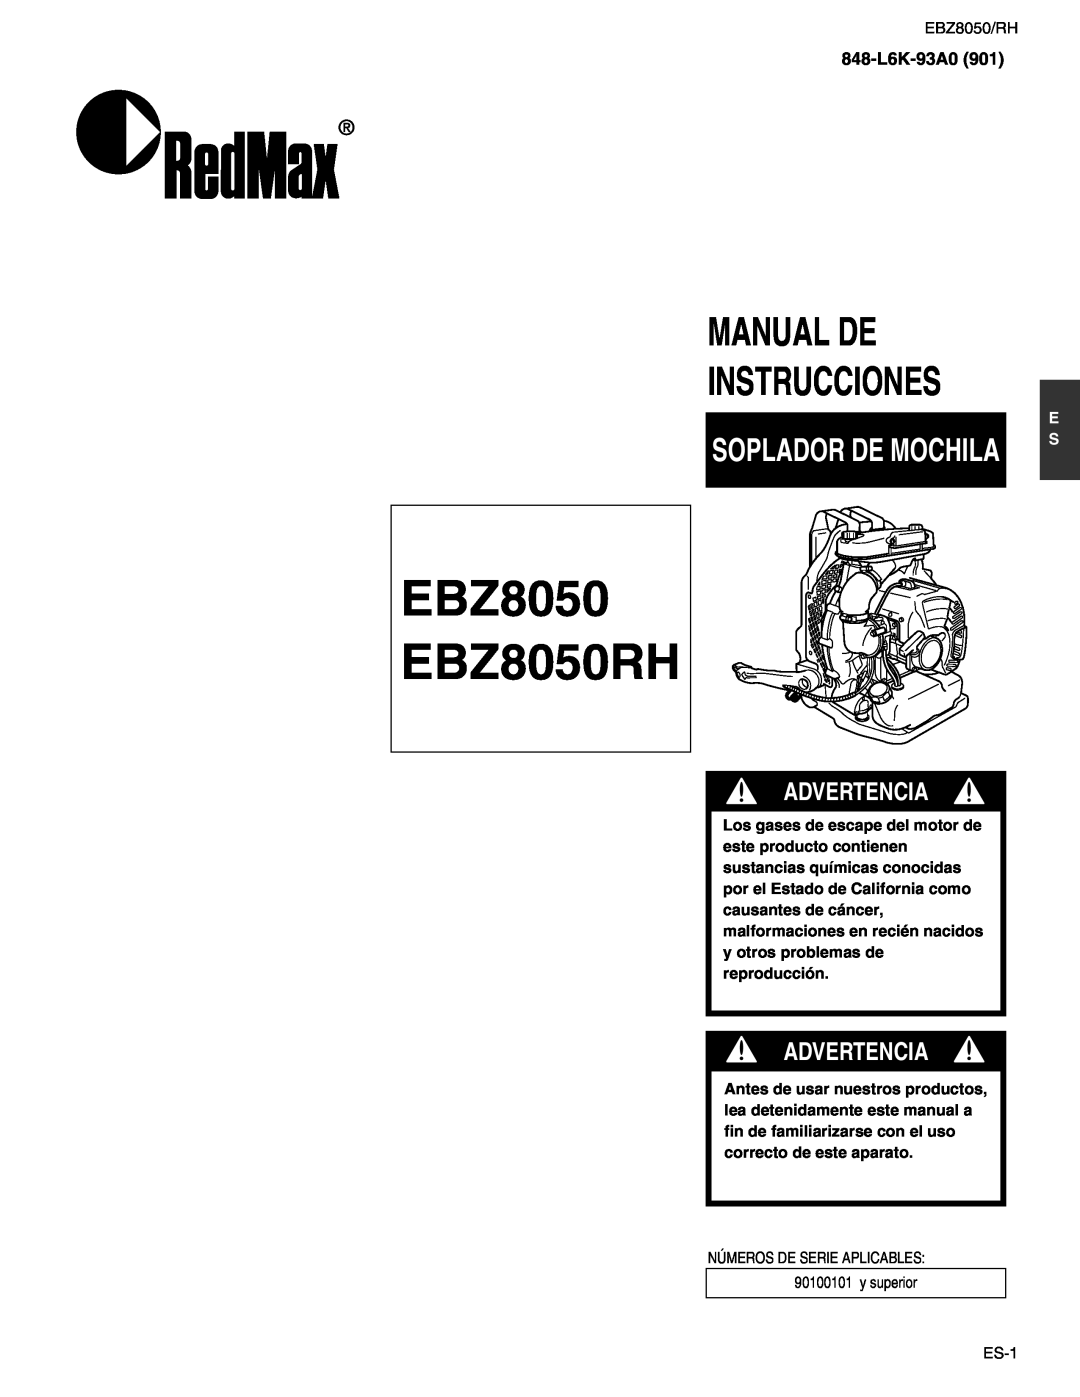 RedMax manual Soplador De Mochila, EBZ8050 EBZ8050RH, Manual De Instrucciones, Advertencia, 848-L6K-93A0 